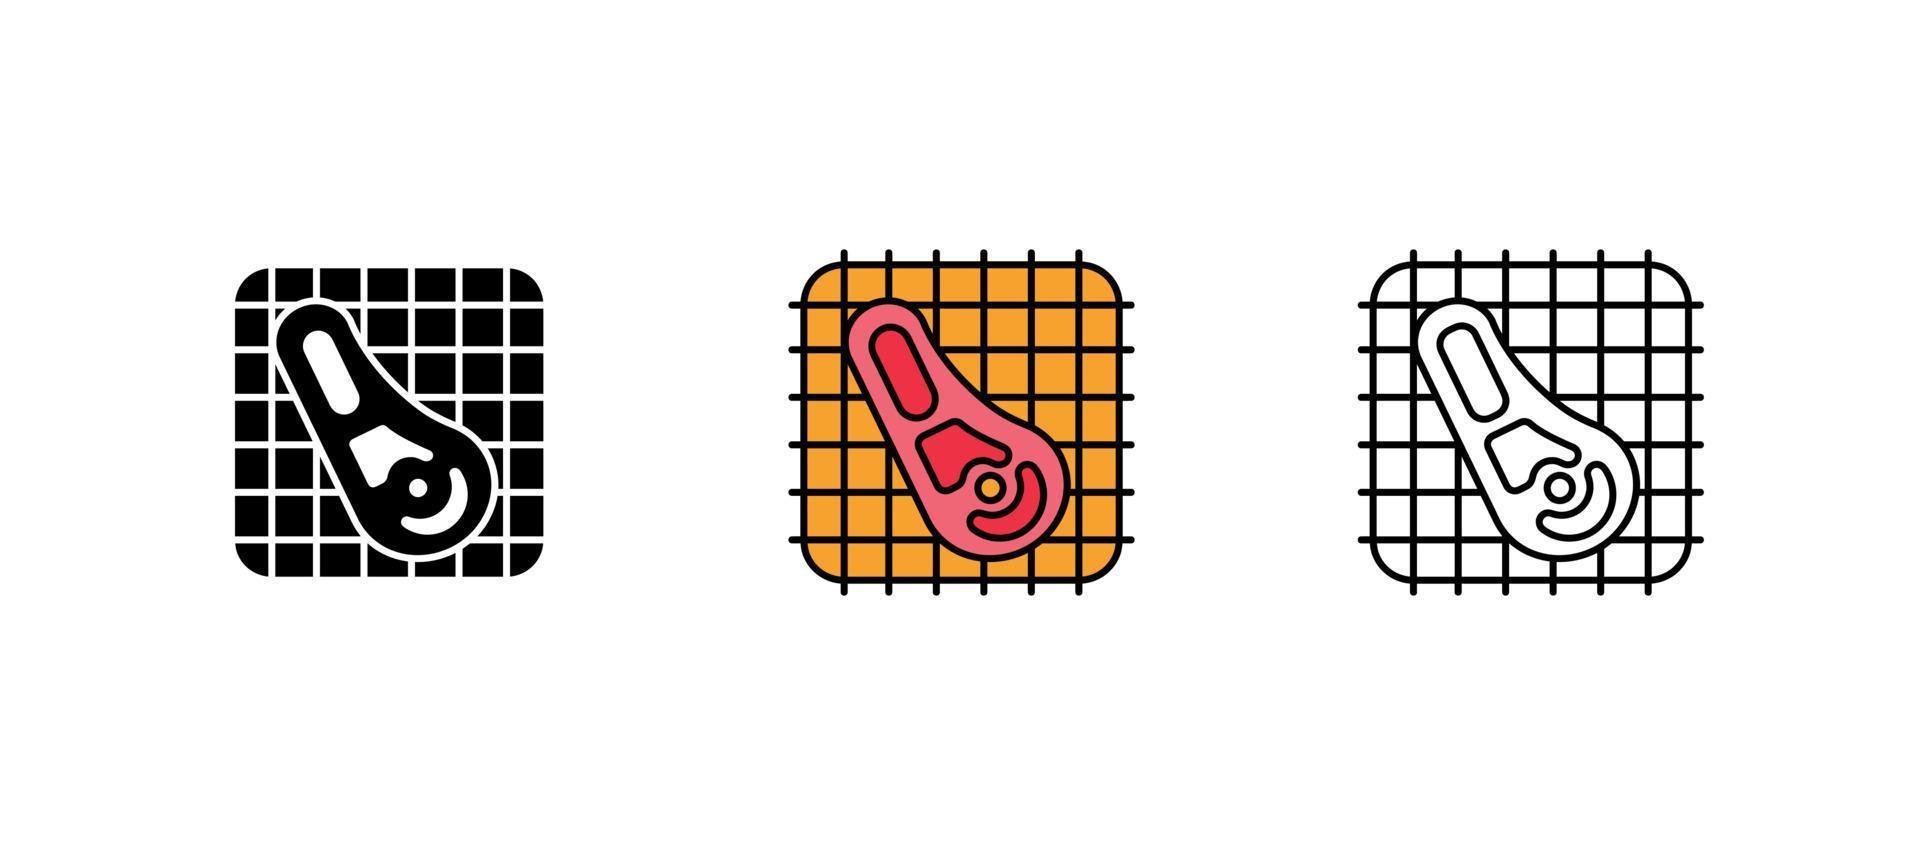 icona di t bone impostata sul barbecue. griglia per barbecue. raccogliere. queste icone contengono icone di cibi caldi. è un insieme di colori, sagome e bei disegni. vettore